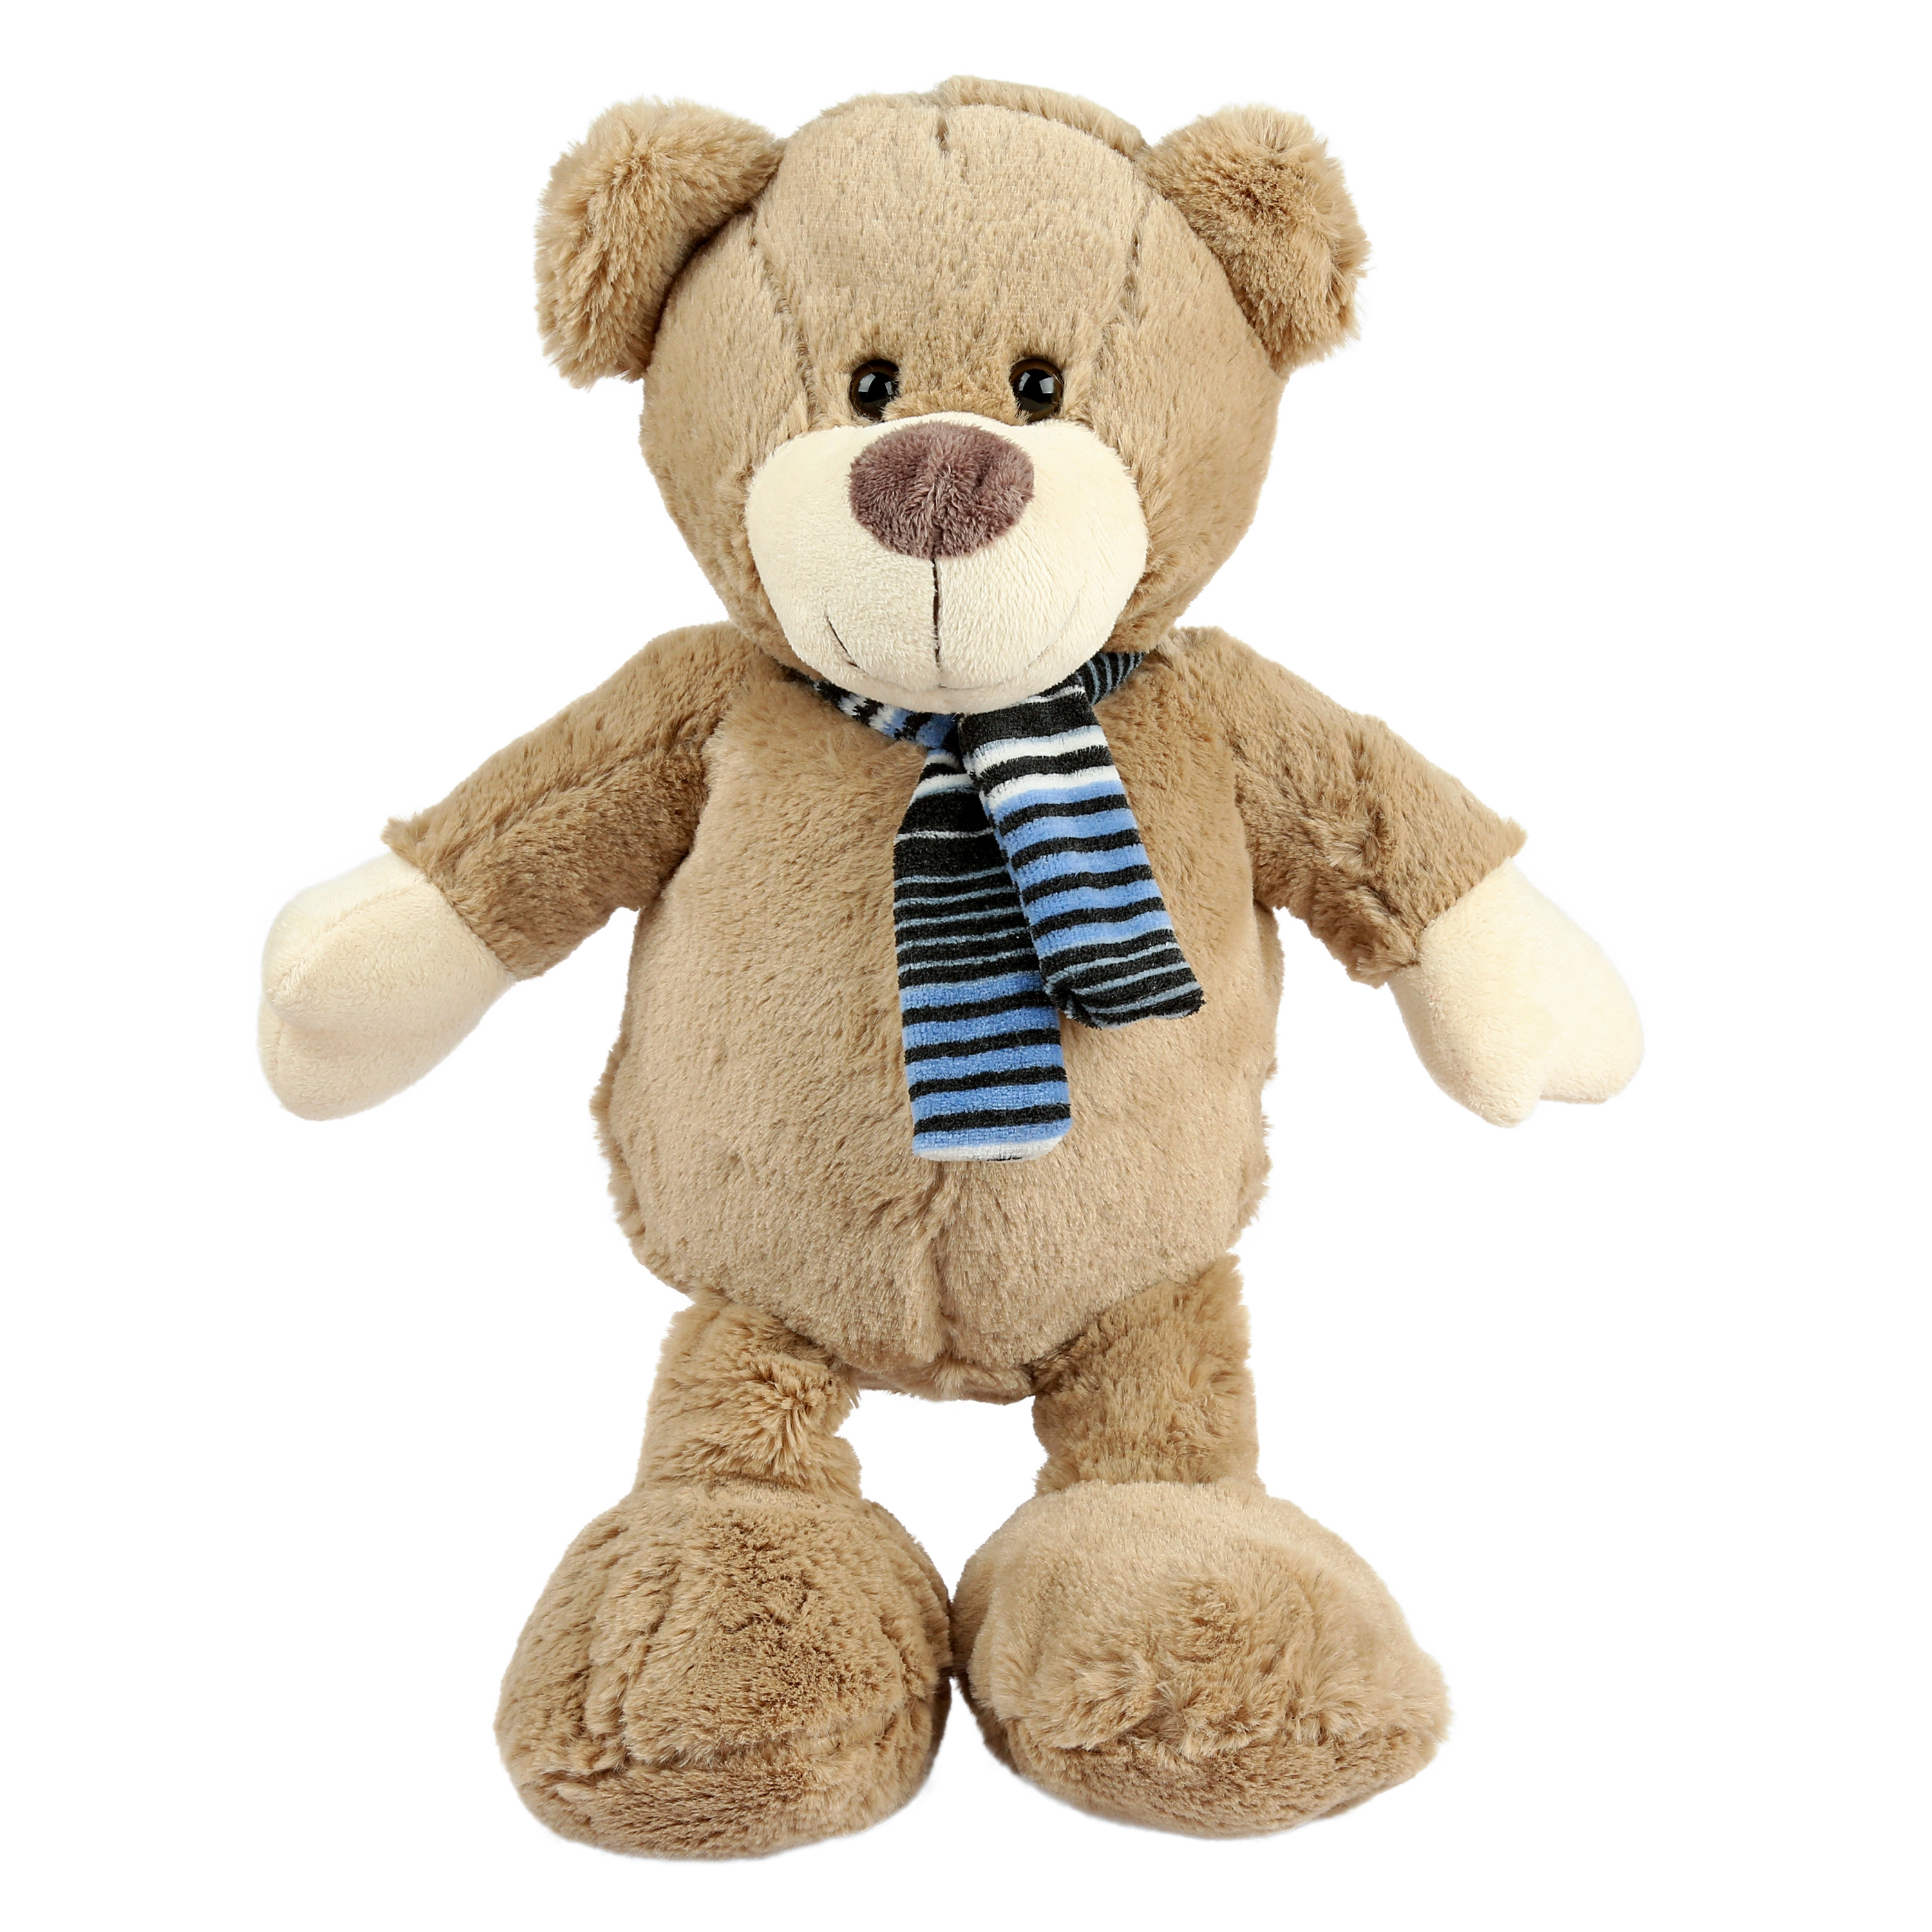 XL Teddybär Bär 80 cm groß heller Bauch Hellbraun Kuscheltier Teddy Kuschelbär 